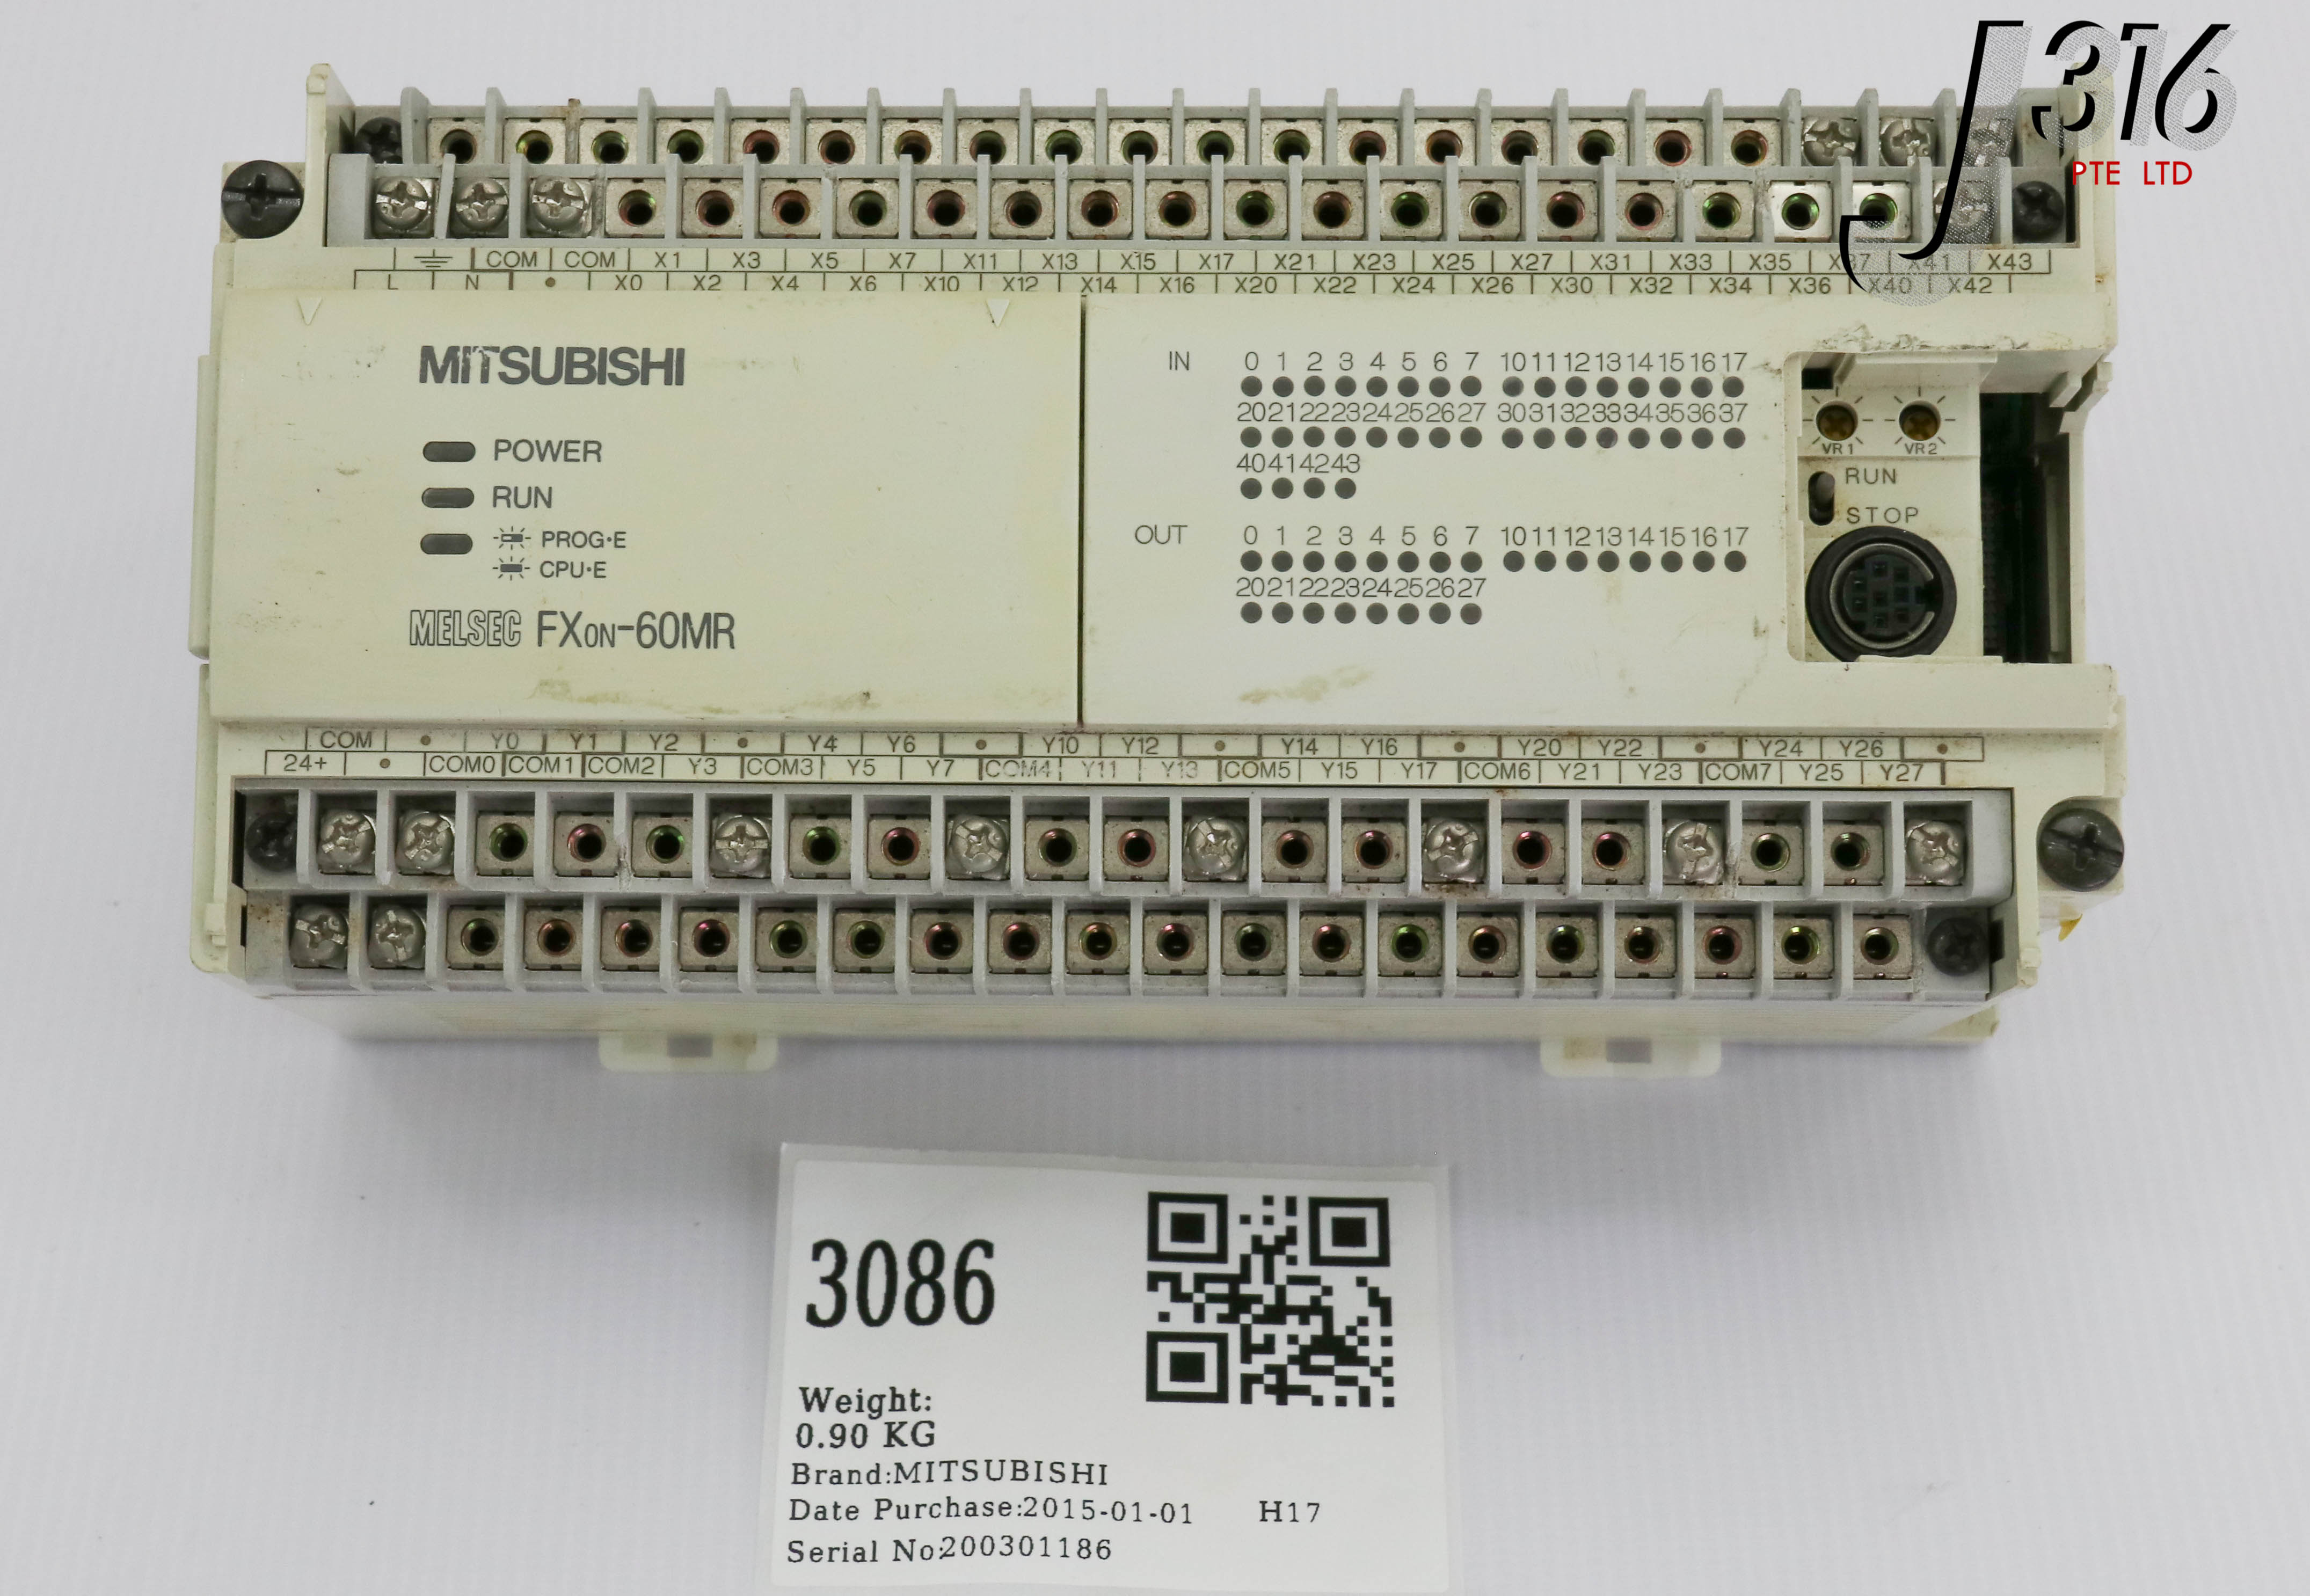 3086 MITSUBISHI MELSEC PROGRAMMABLE CONTROLLER, AC85~264V 50/60HZ